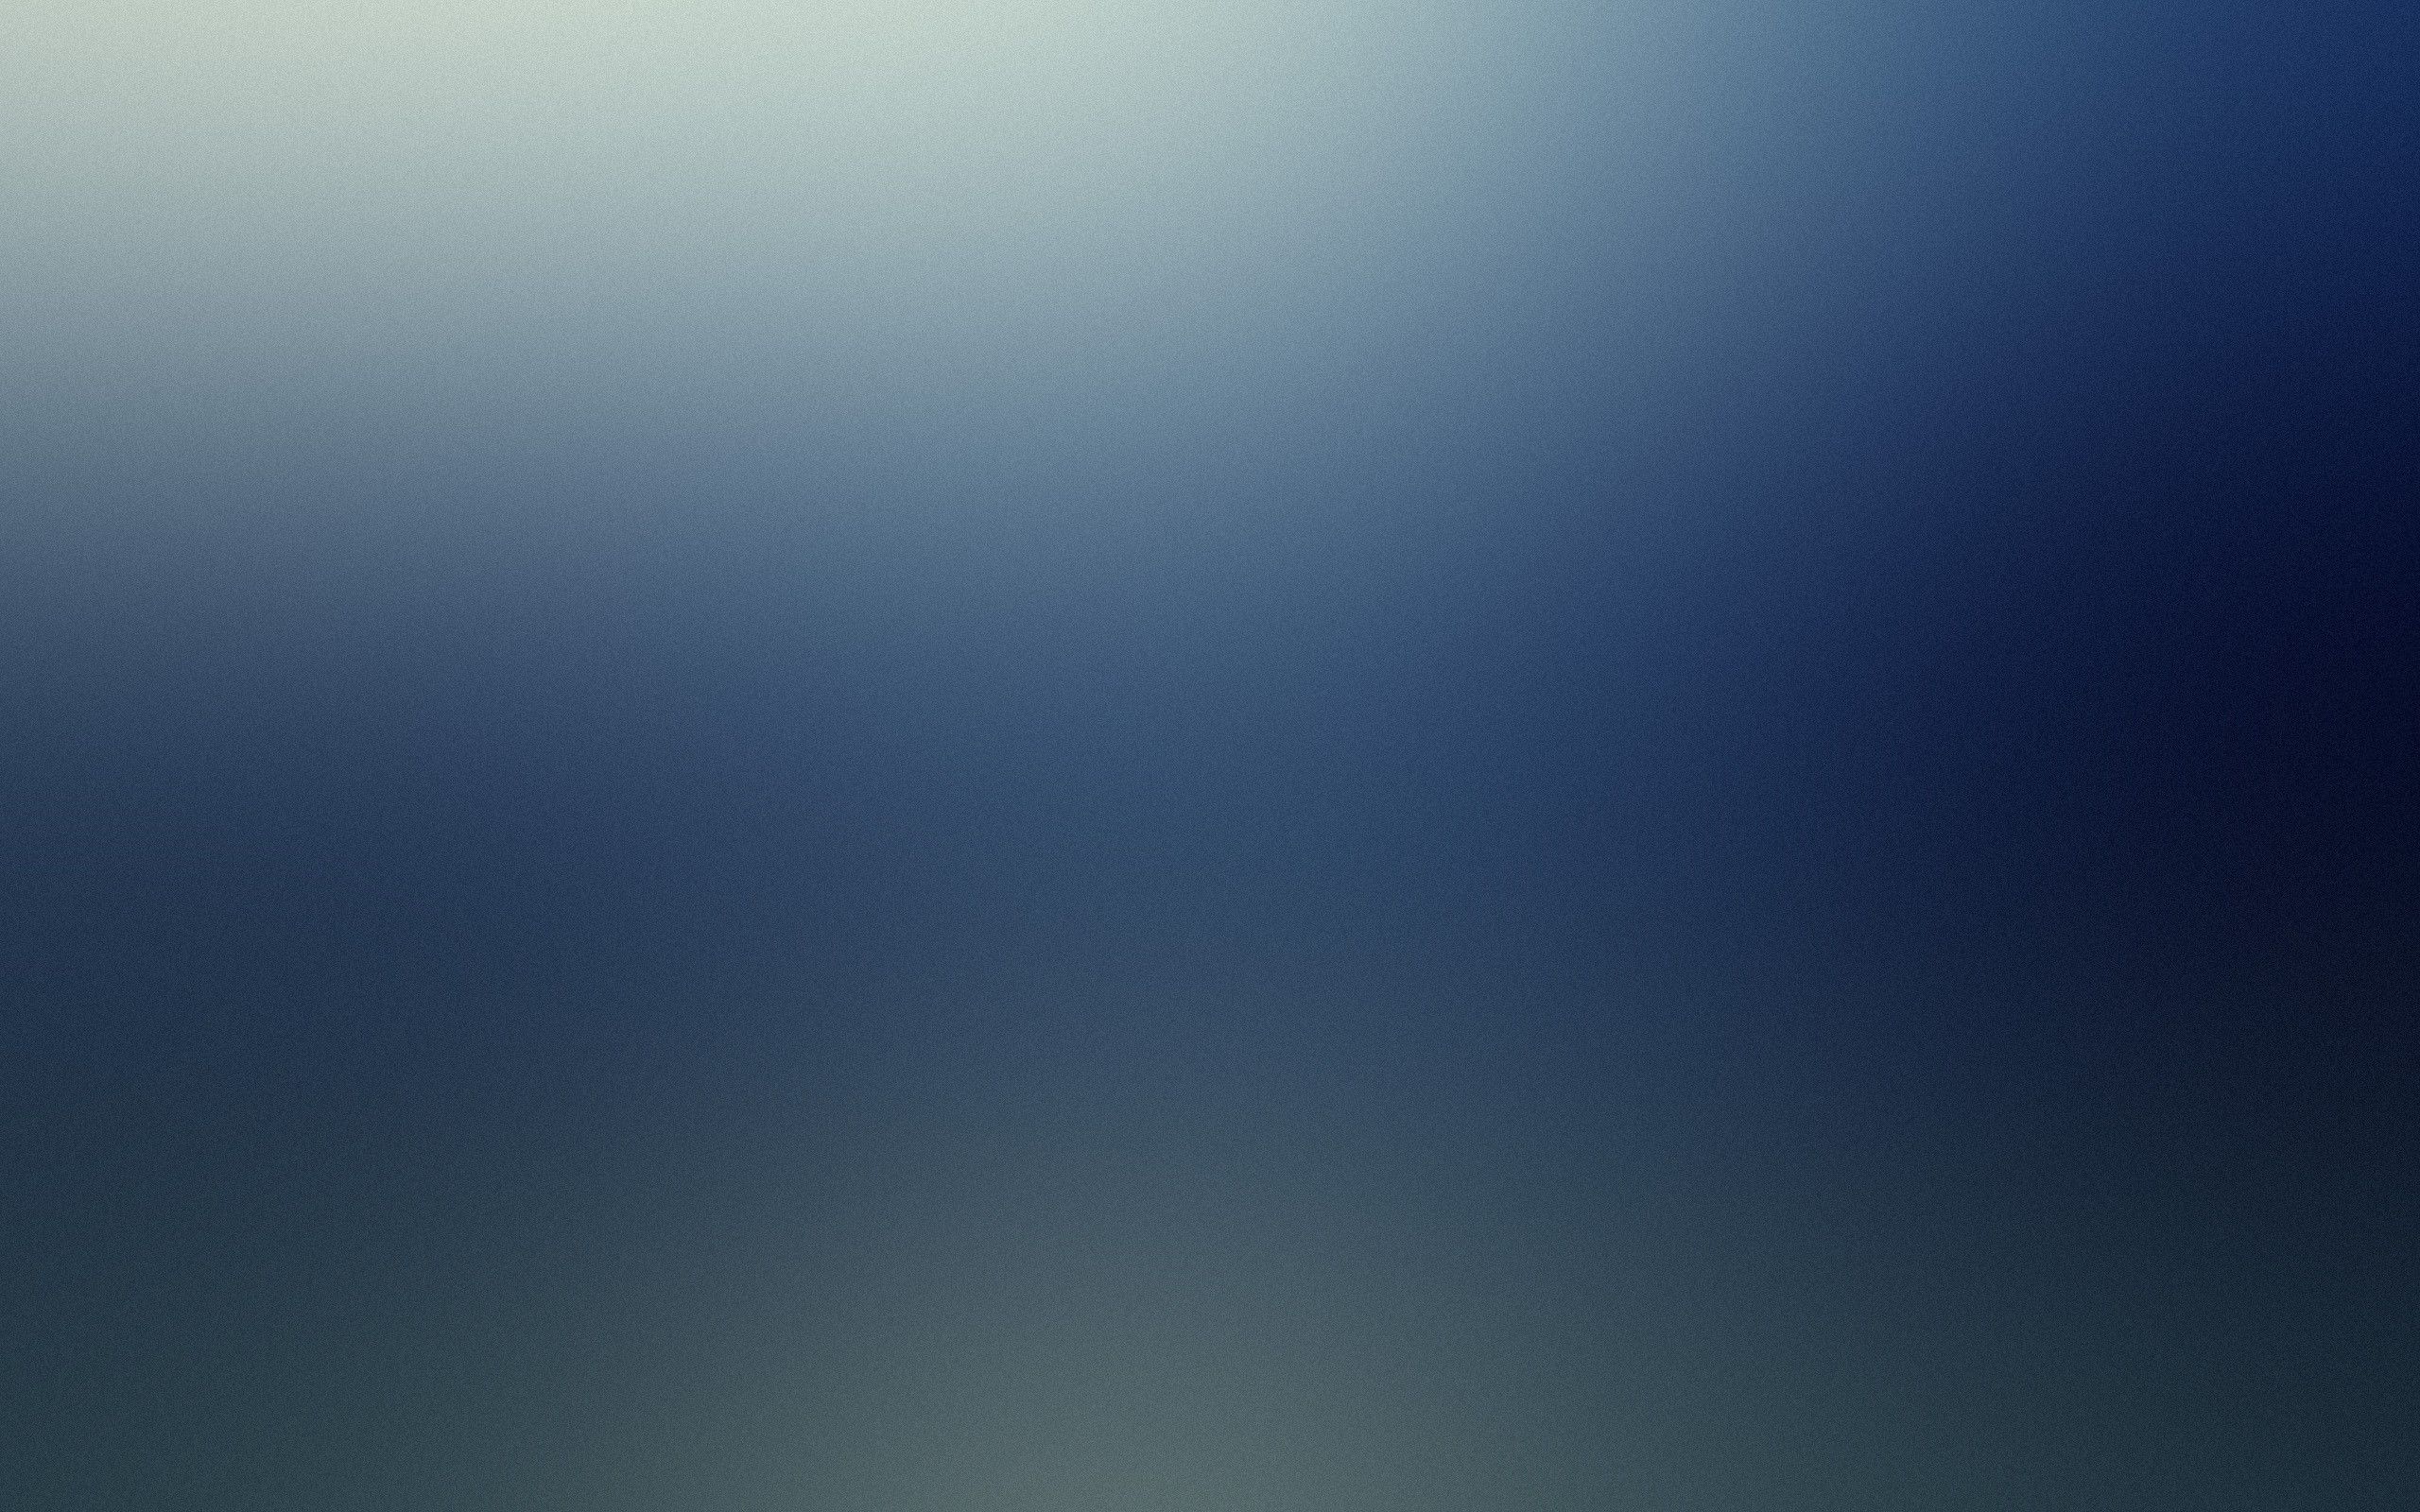 Light minimalistic lame gaussian blur blurred wallpaper ...